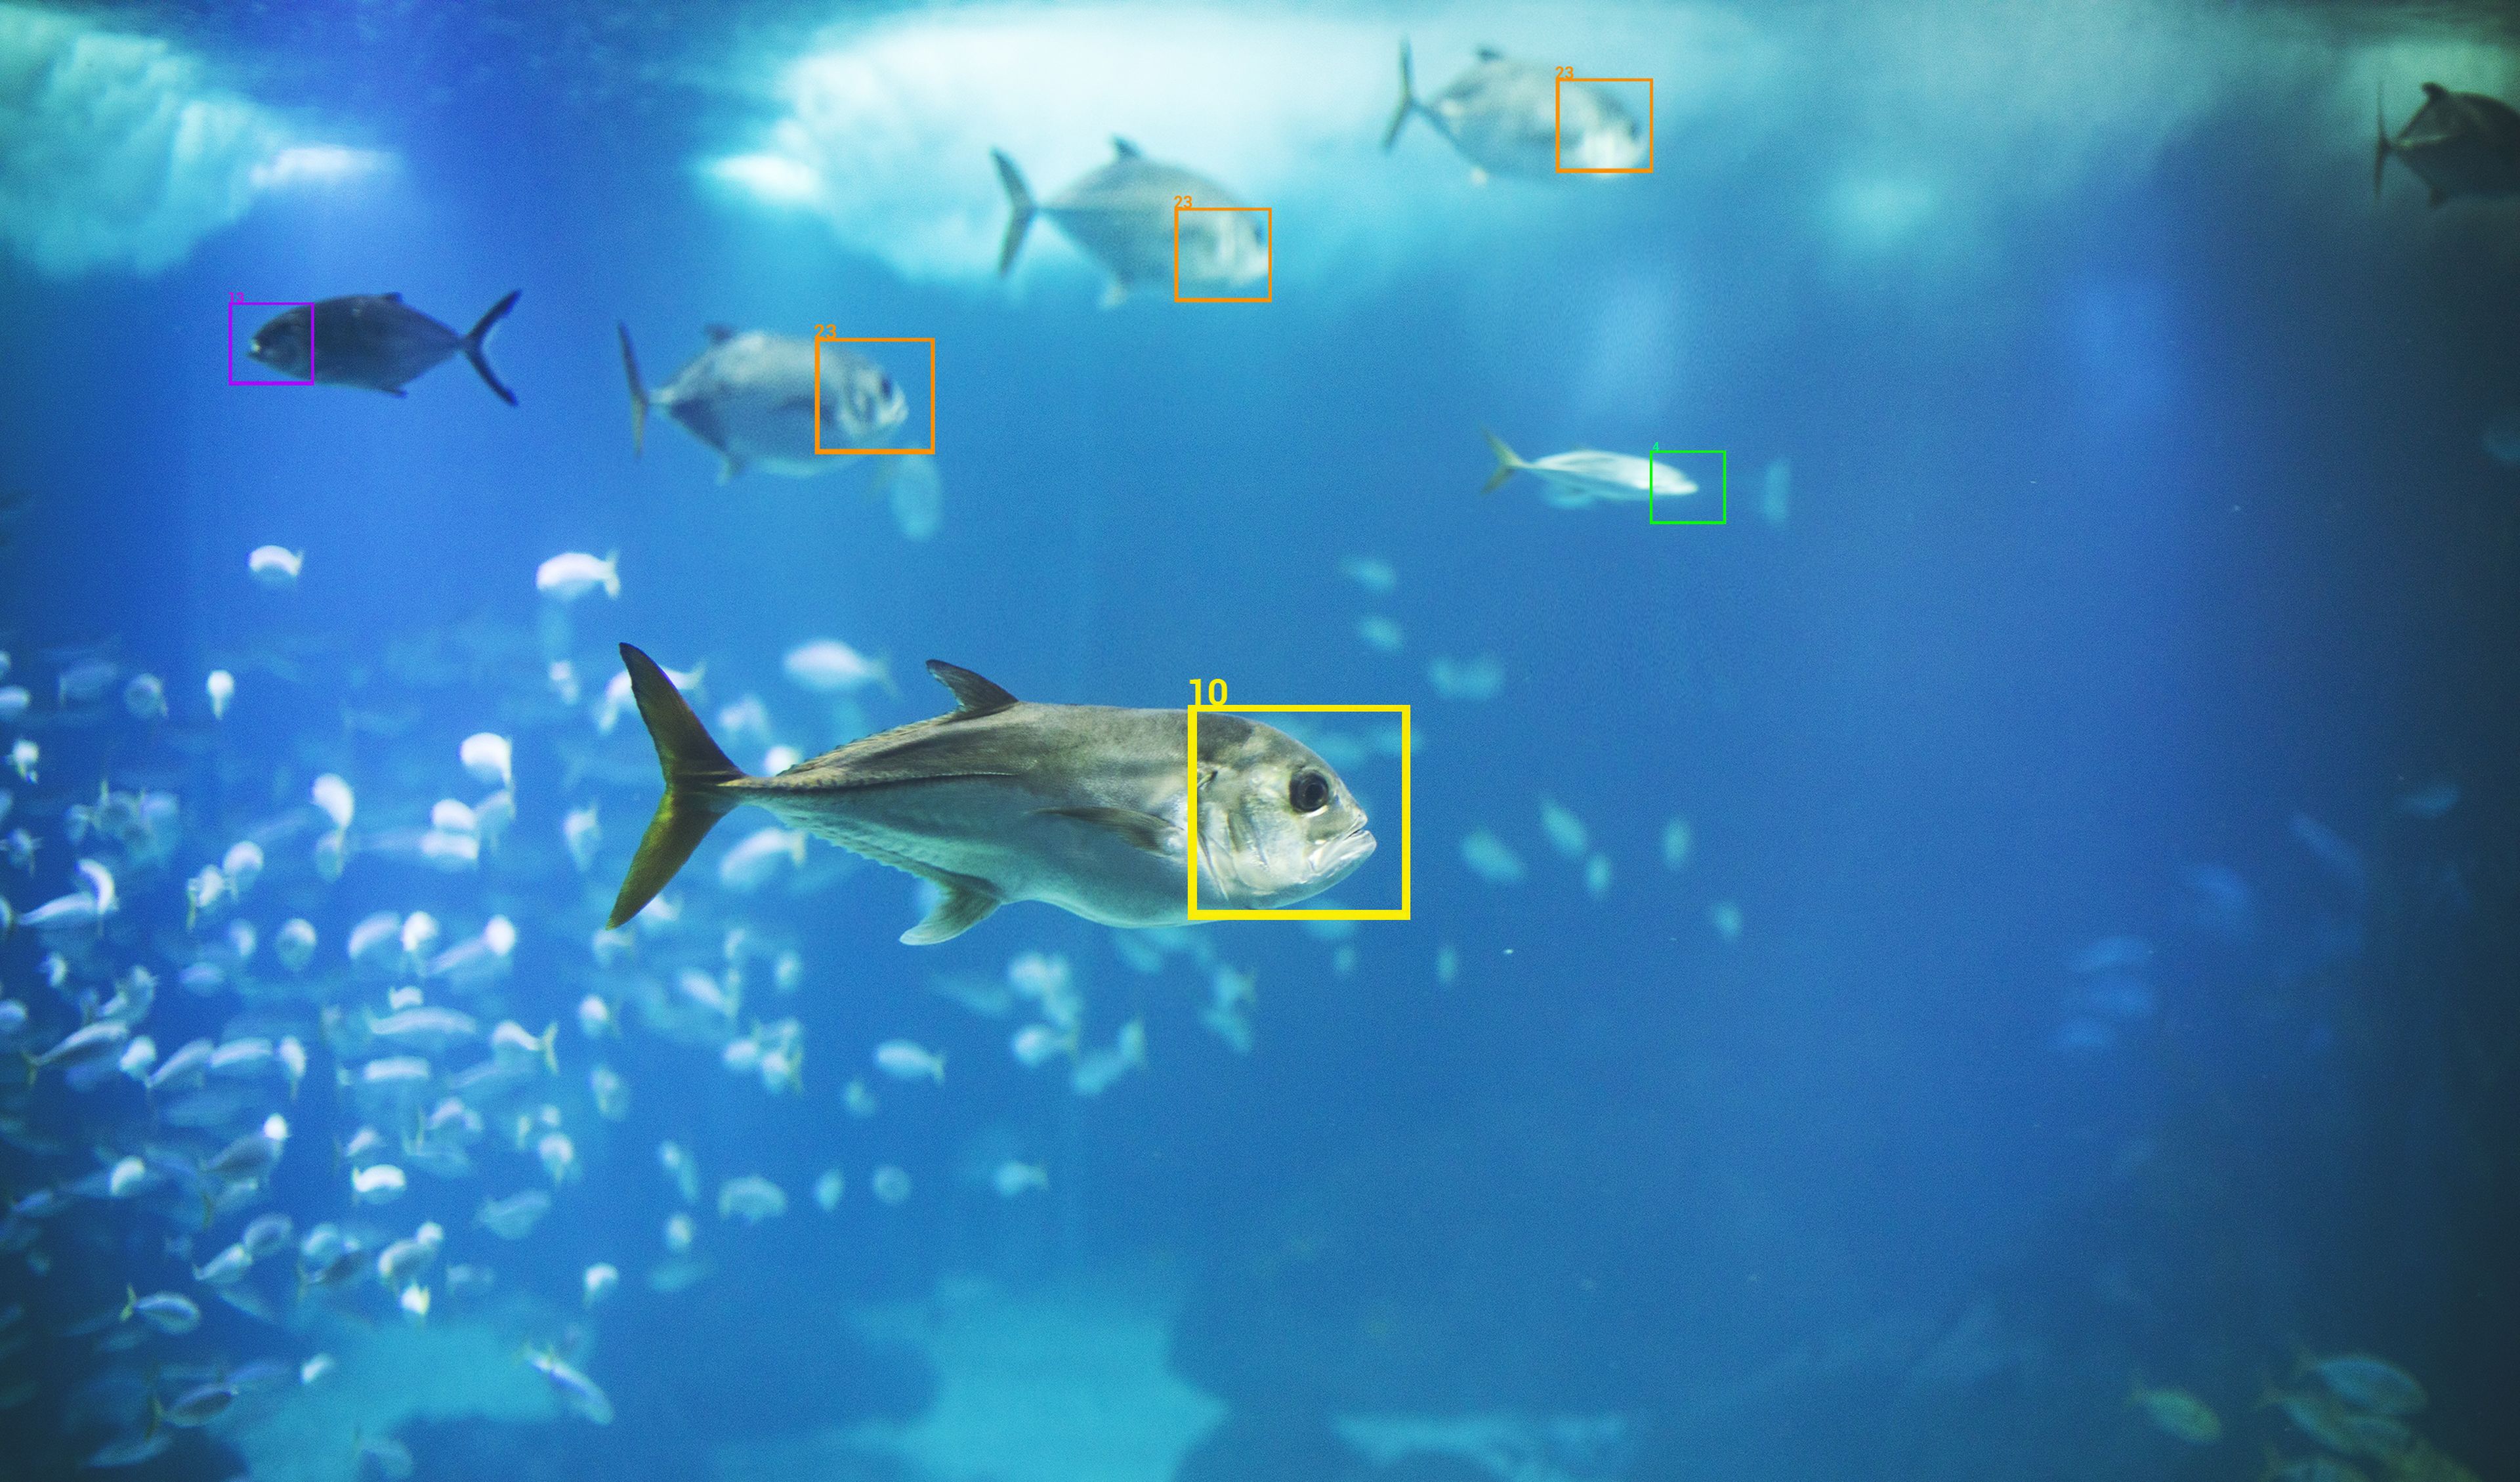 Sistema de reconocimiento de peces.